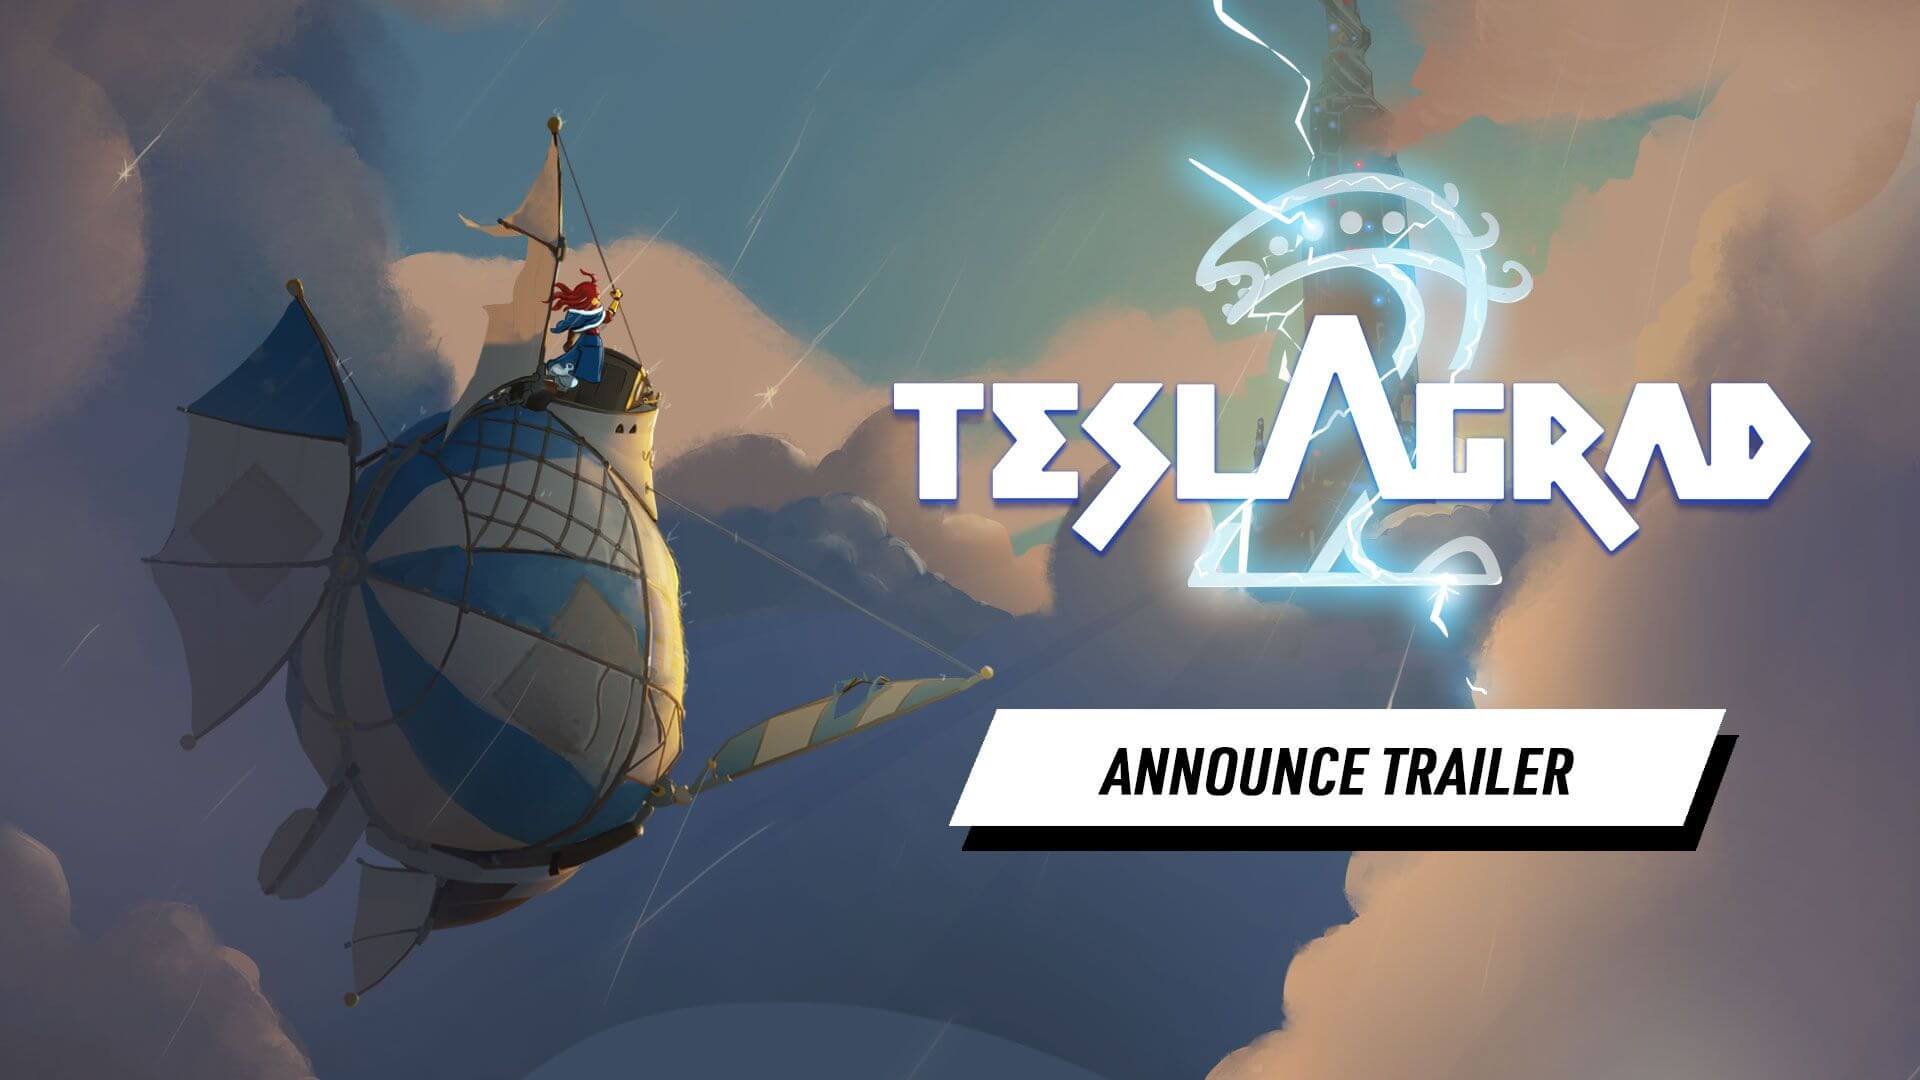 Los puzles de Teslagrad 2 llegarán a PS4 y PS5 en 2023